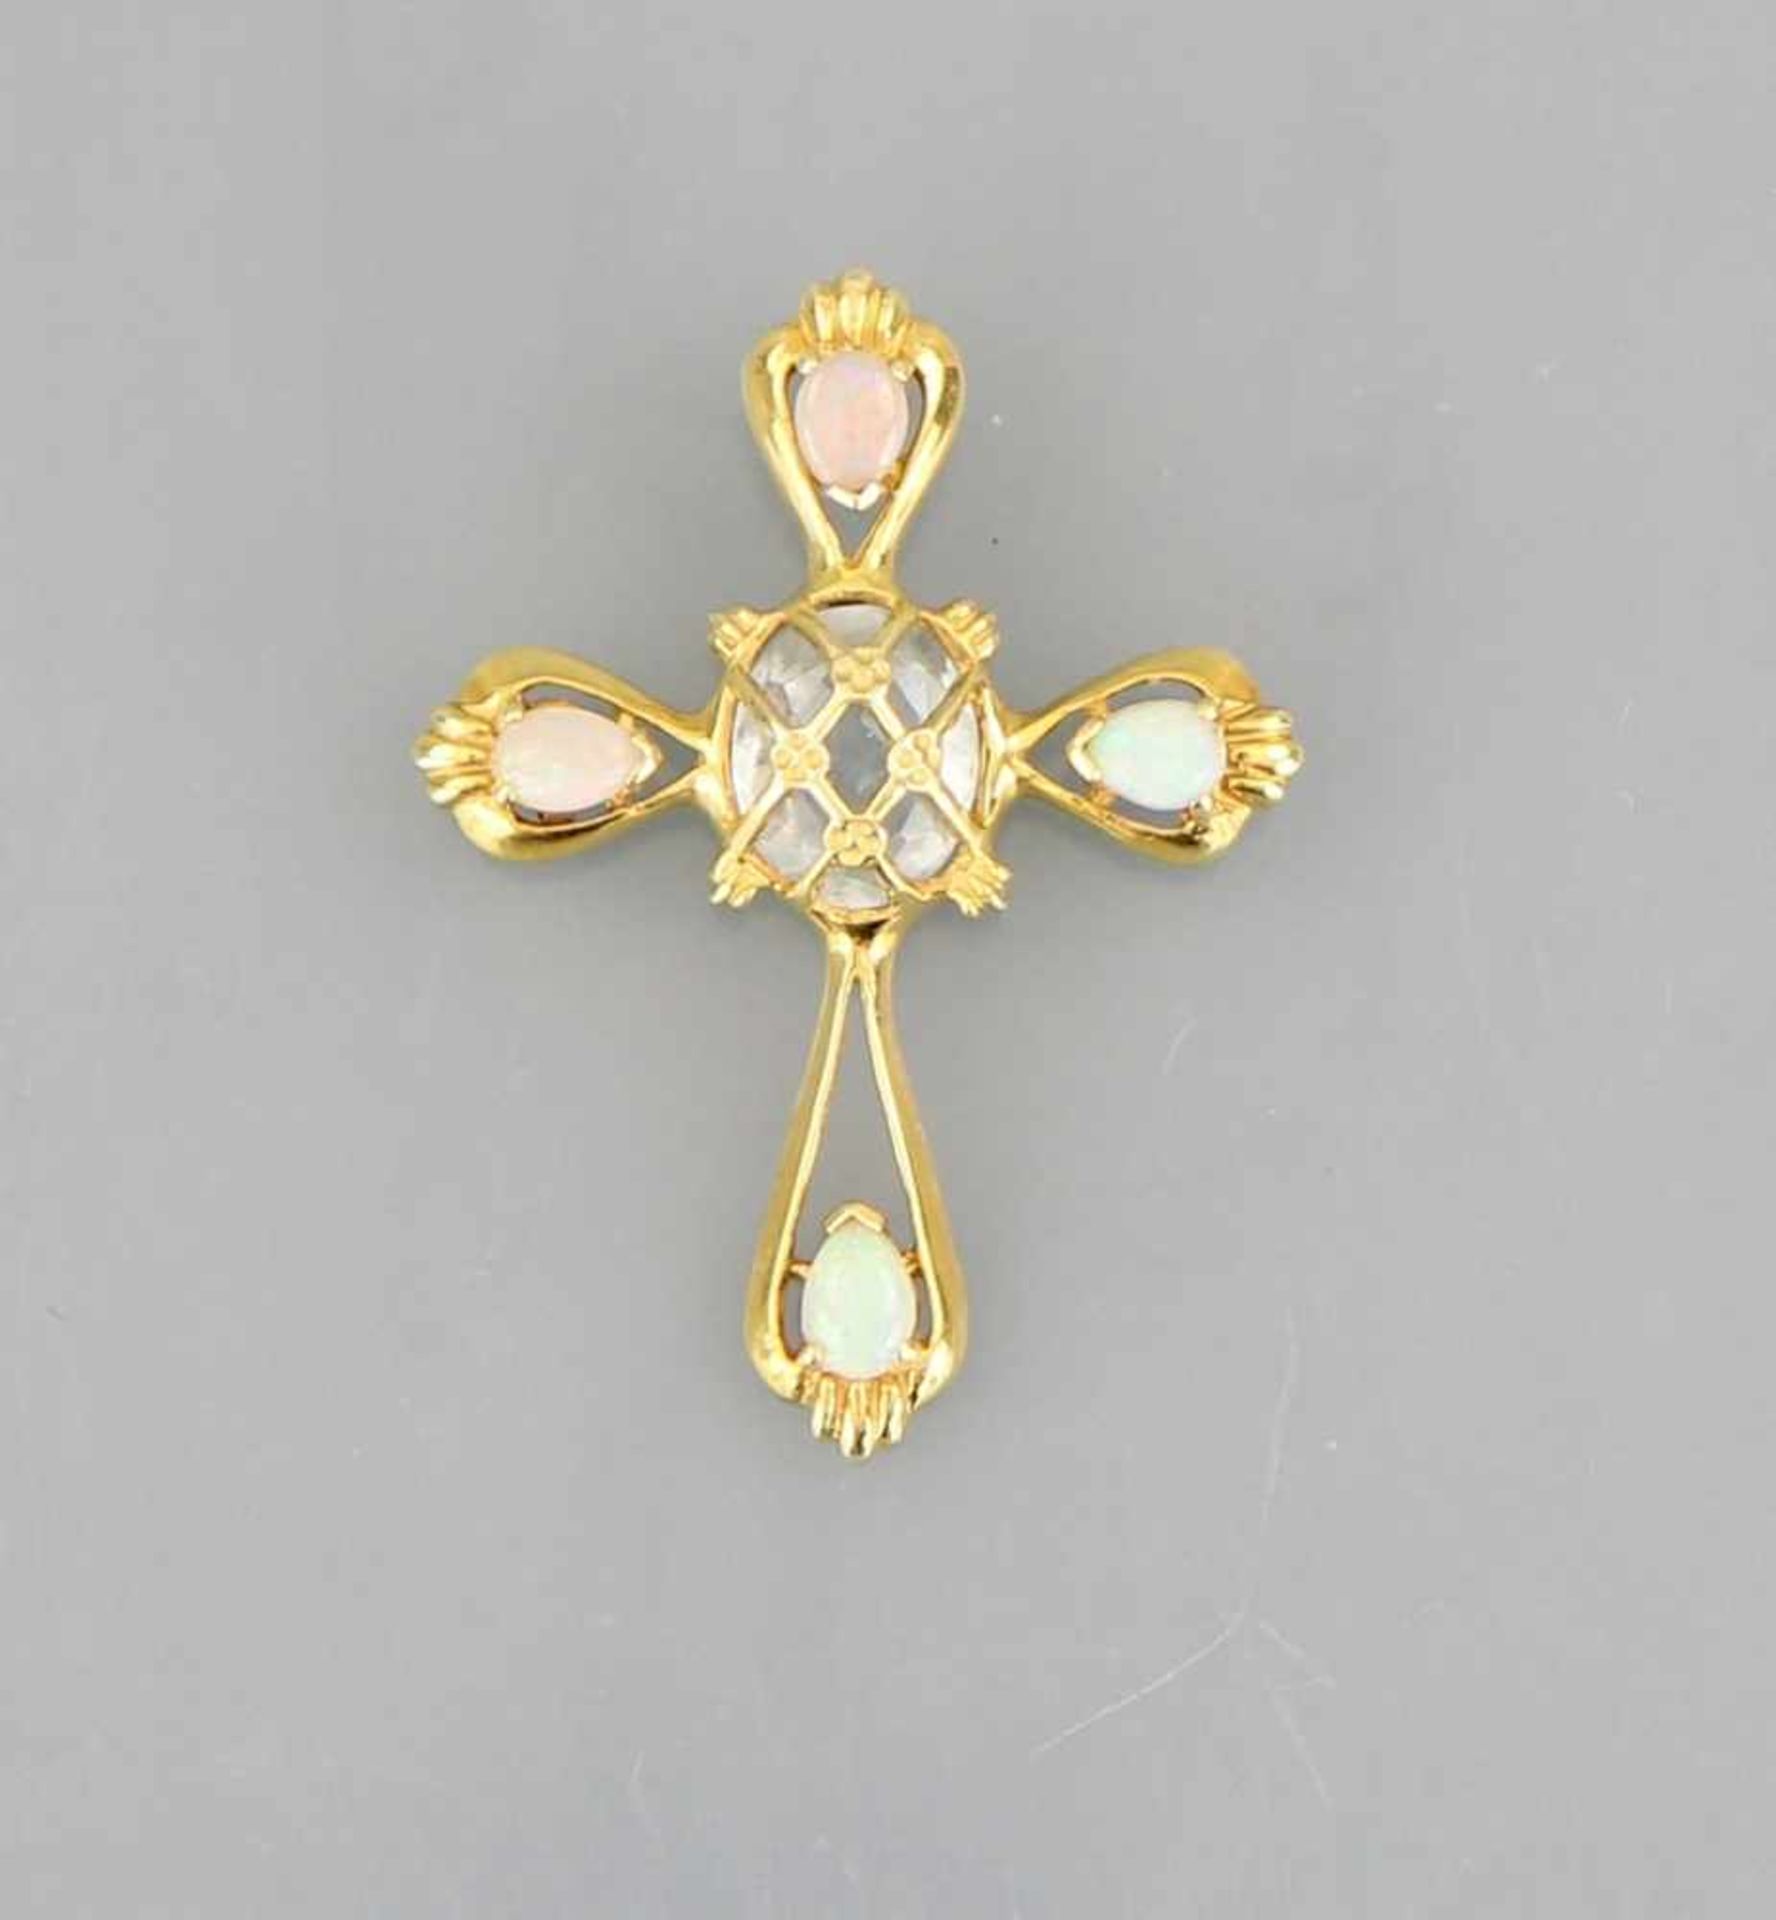 Kreuzanhänger Gelbgold 14kt., durchbrochen gearbeitetes Kreuz besetzt mit vier kleinen ovalen Opalen